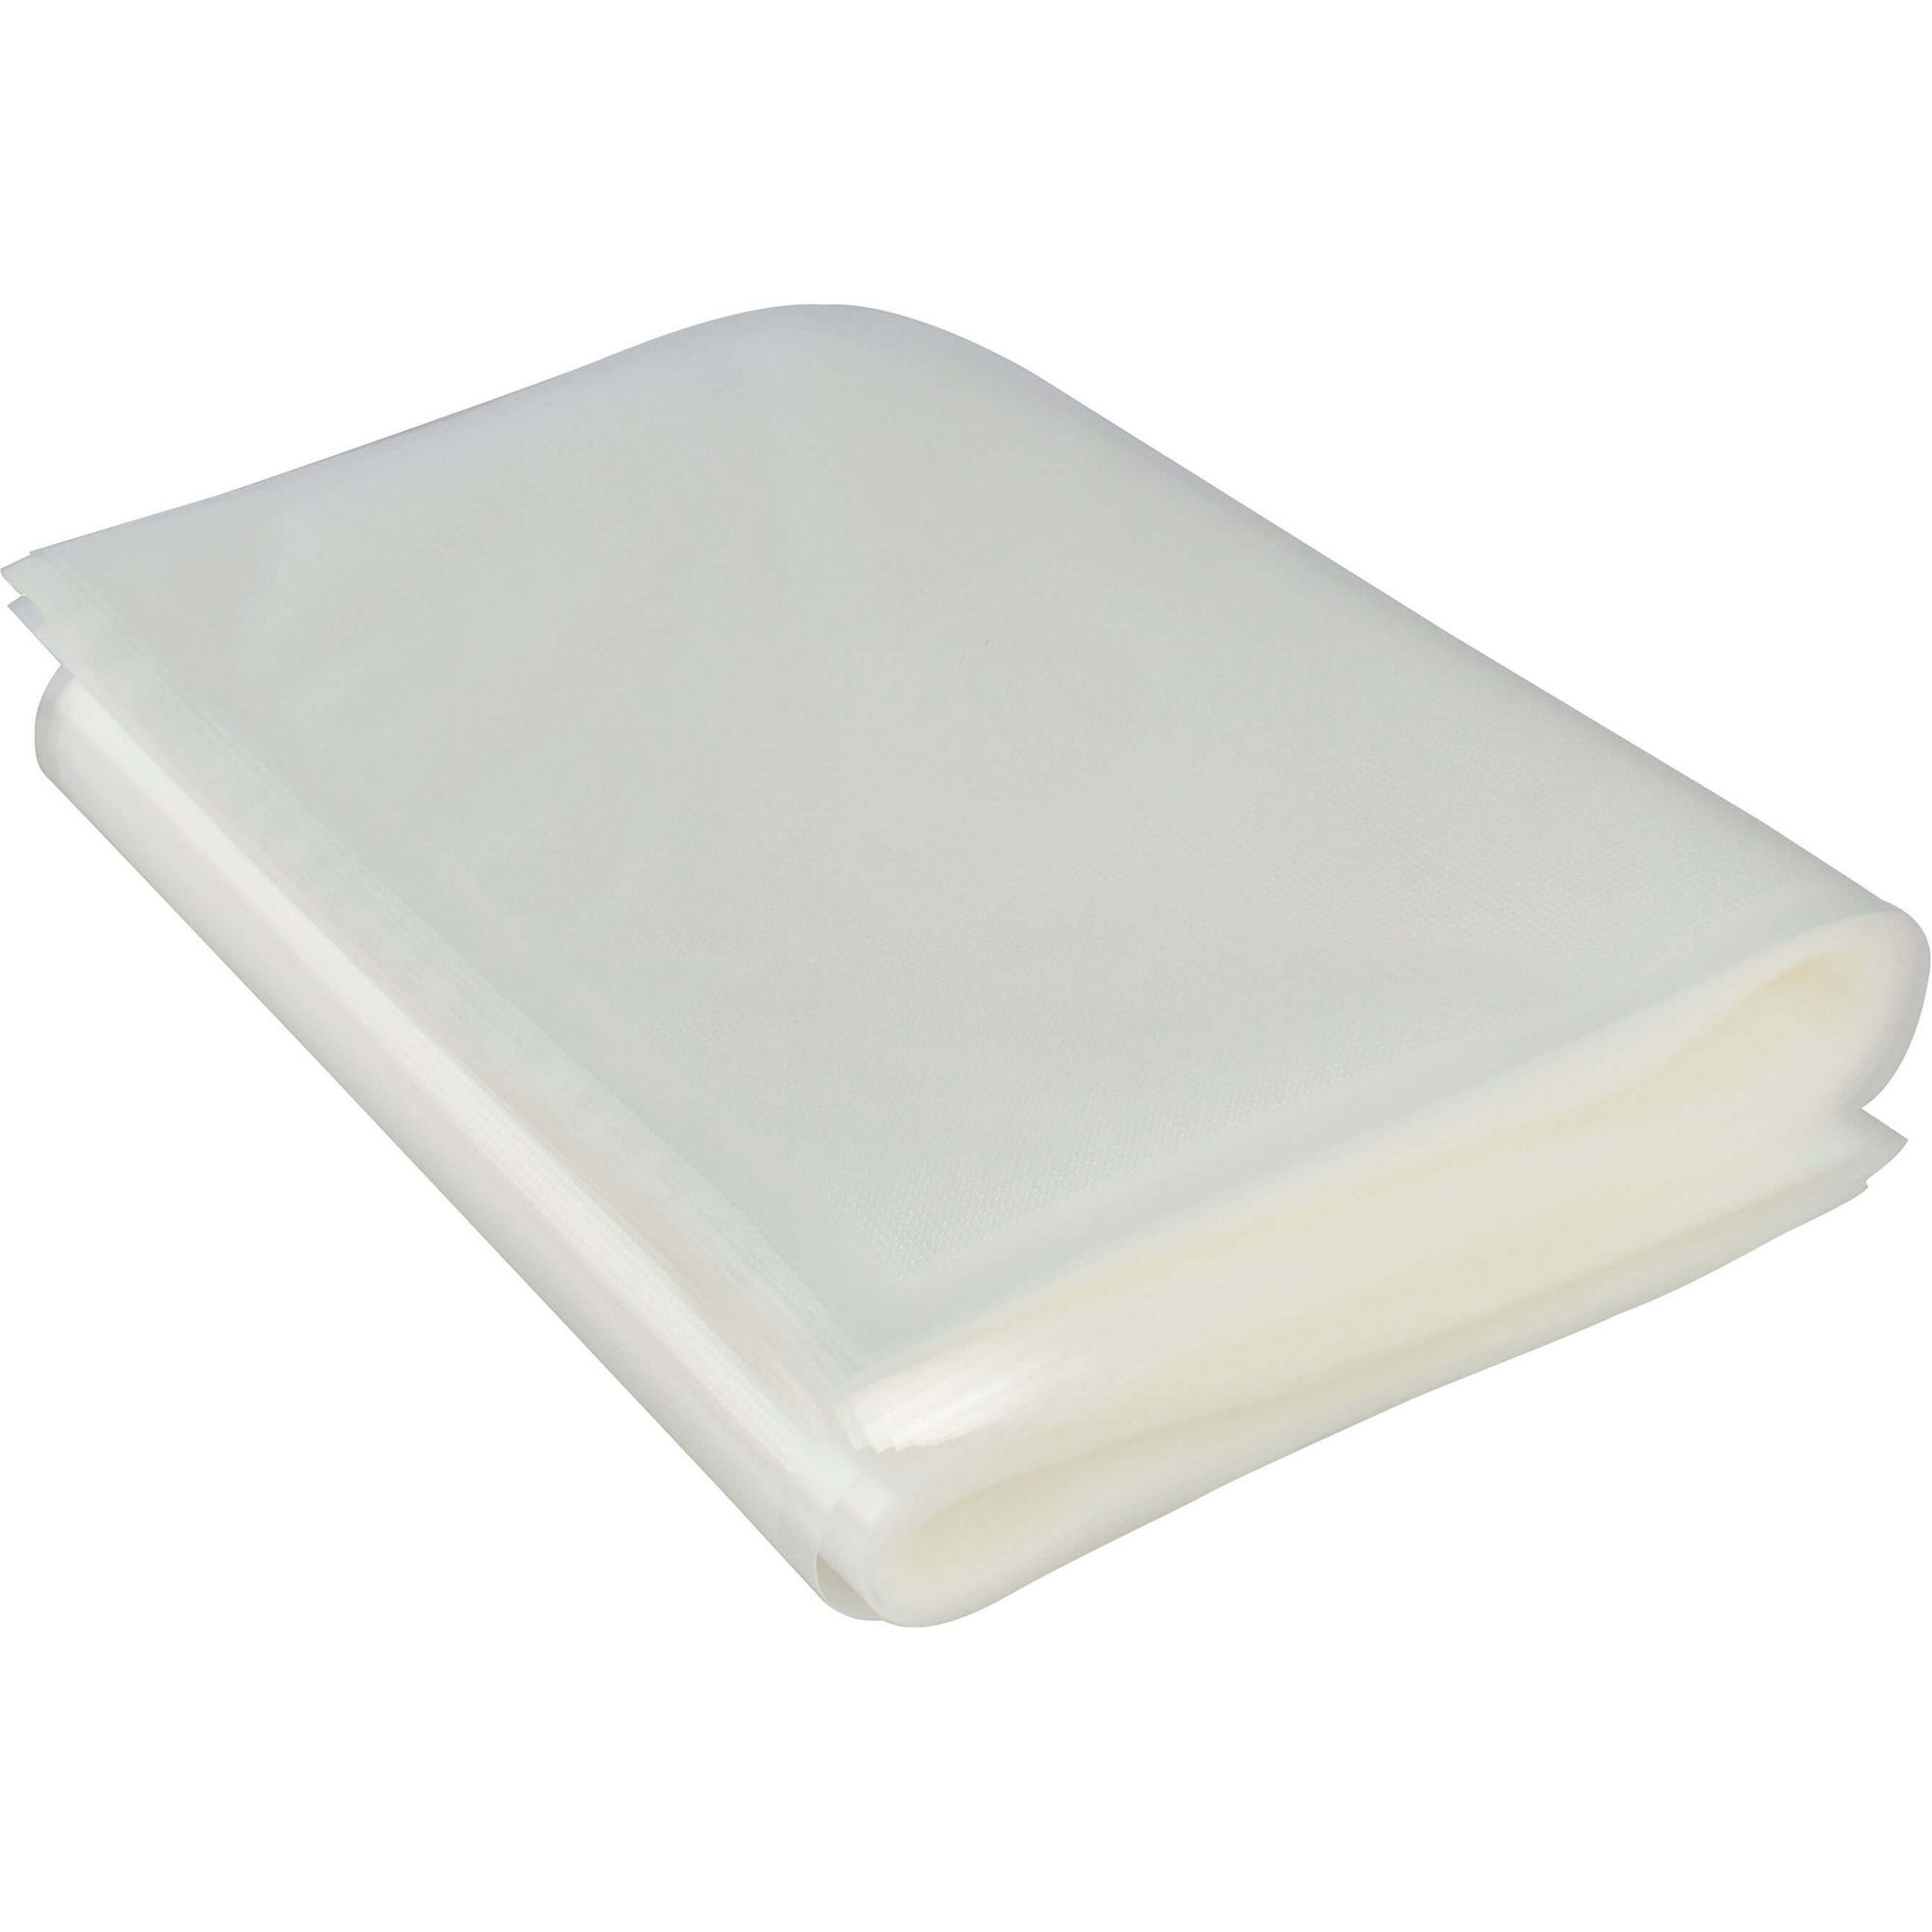 Пакеты для вакуумного упаковщика Gemlux GL-VB2840-50P, цвет белый, размер 28x40 см - фото 1